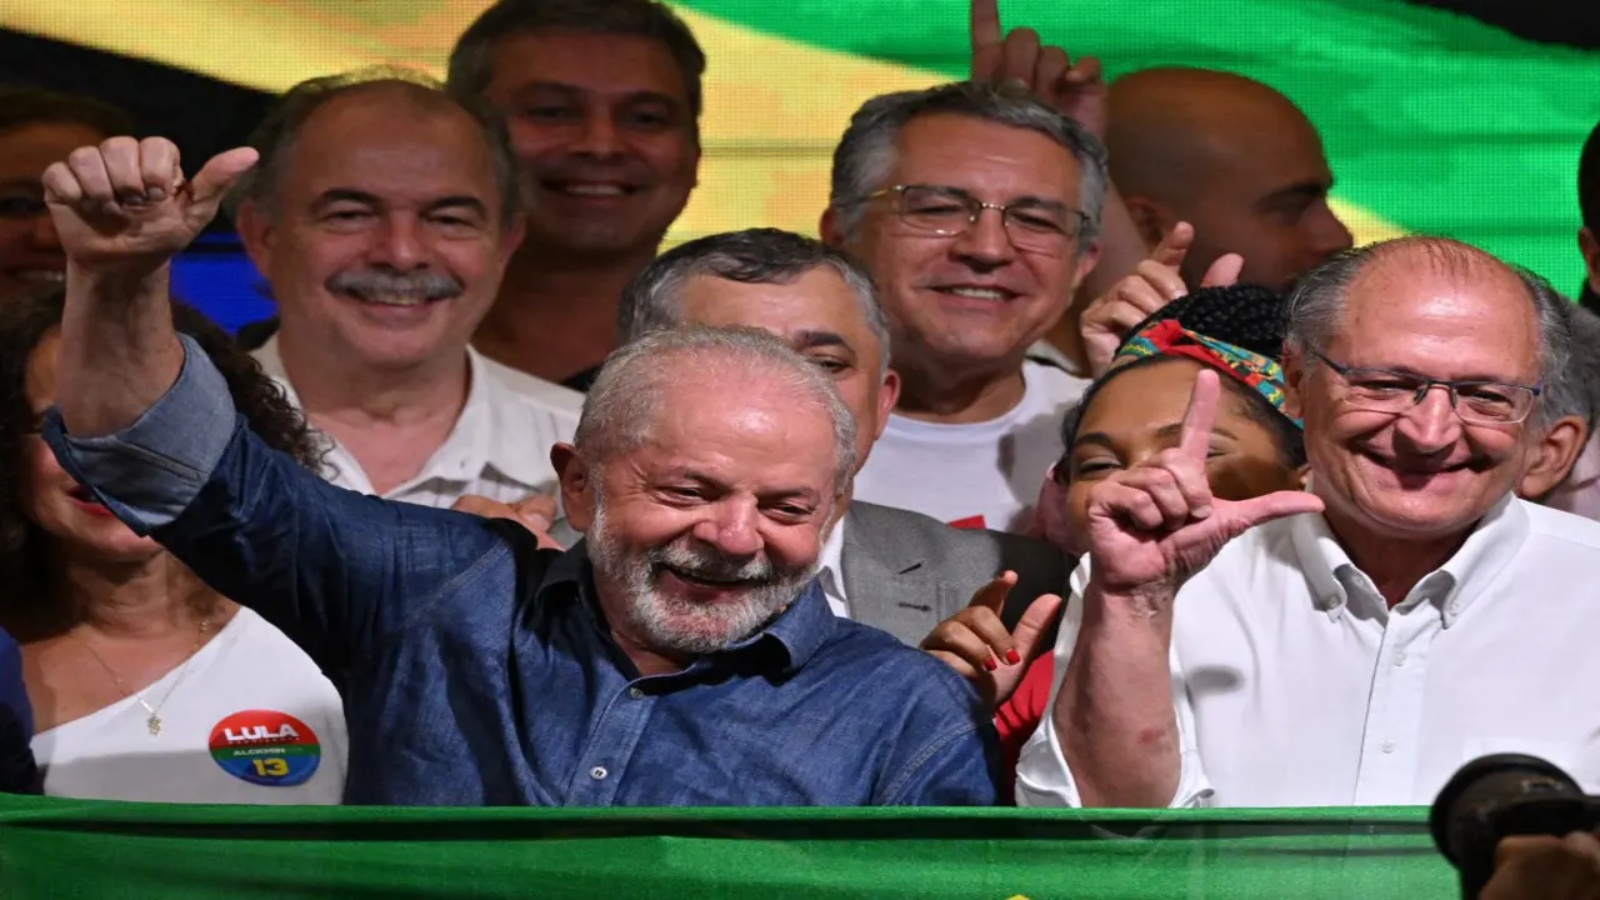 هزم الزعيم البرازيلي اليساري السابق لويز إيناسيو لولا دا سيلفا شاغل المنصب جايير بولسونارو في الانتخابات الرئاسية، إيذاناً بنهاية حكومة اليمين المتطرف في البلاد